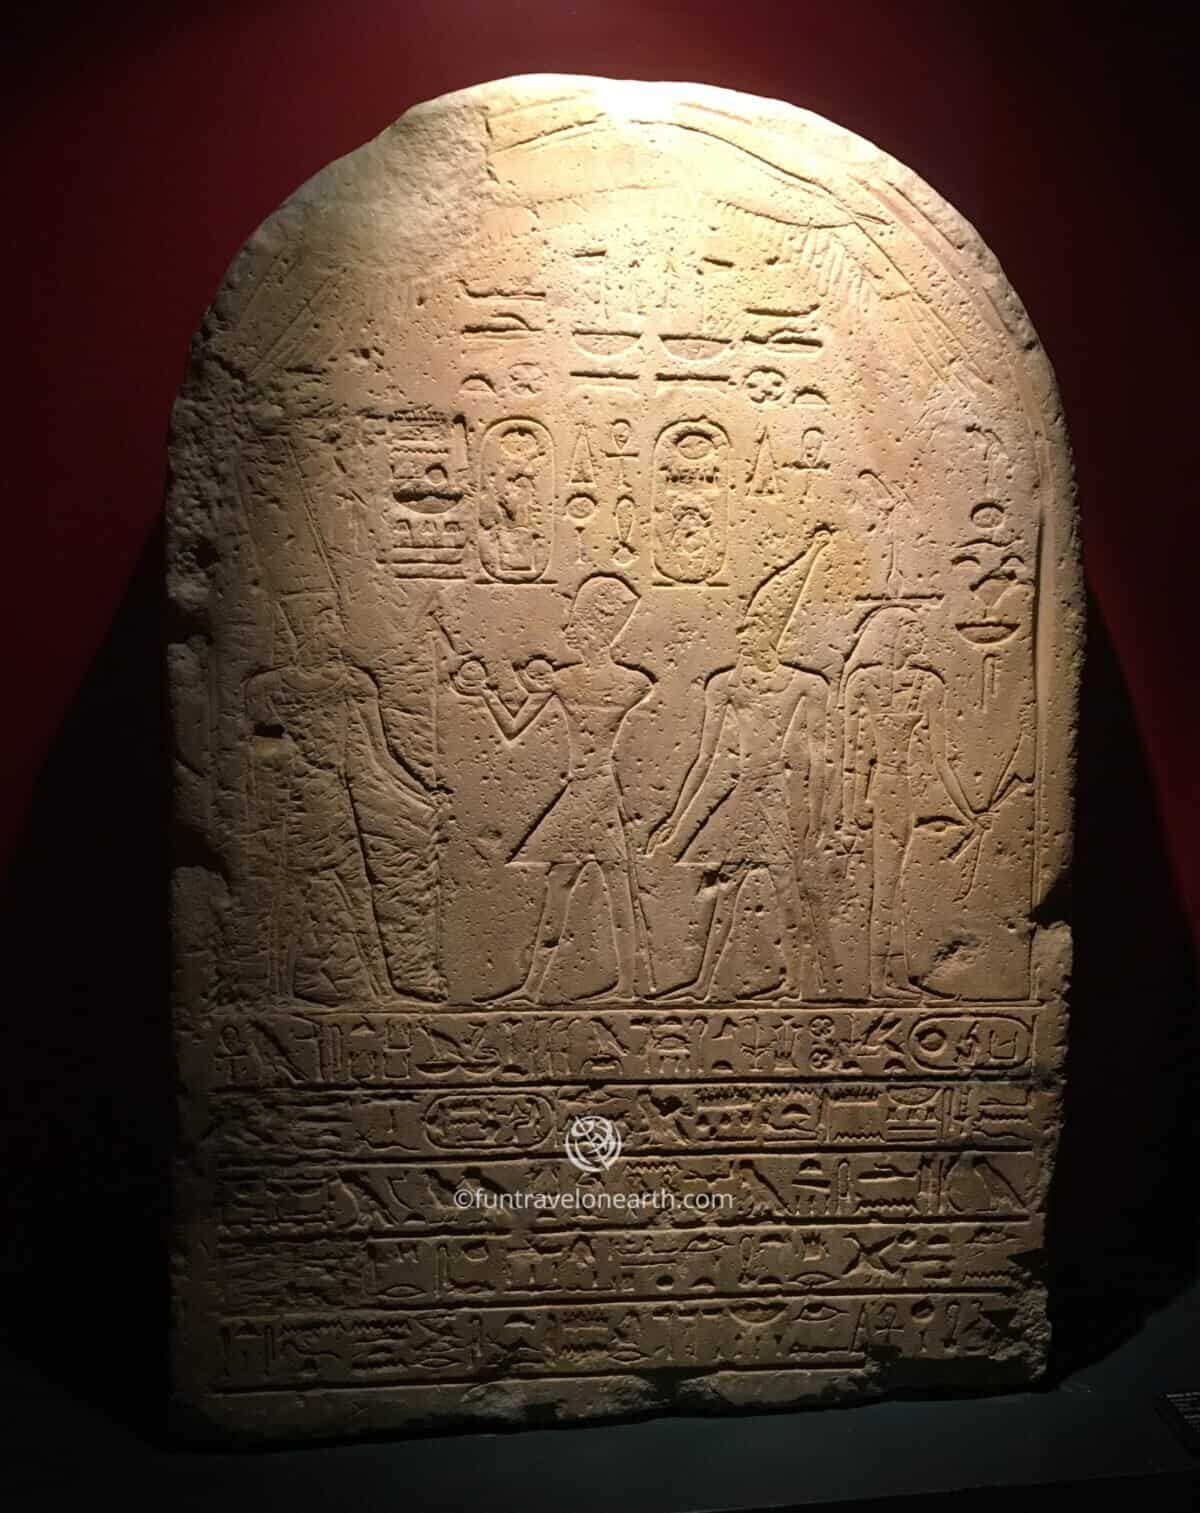 「Stele of Hatshepsut and Thutmose III」room1, Vatican Museums